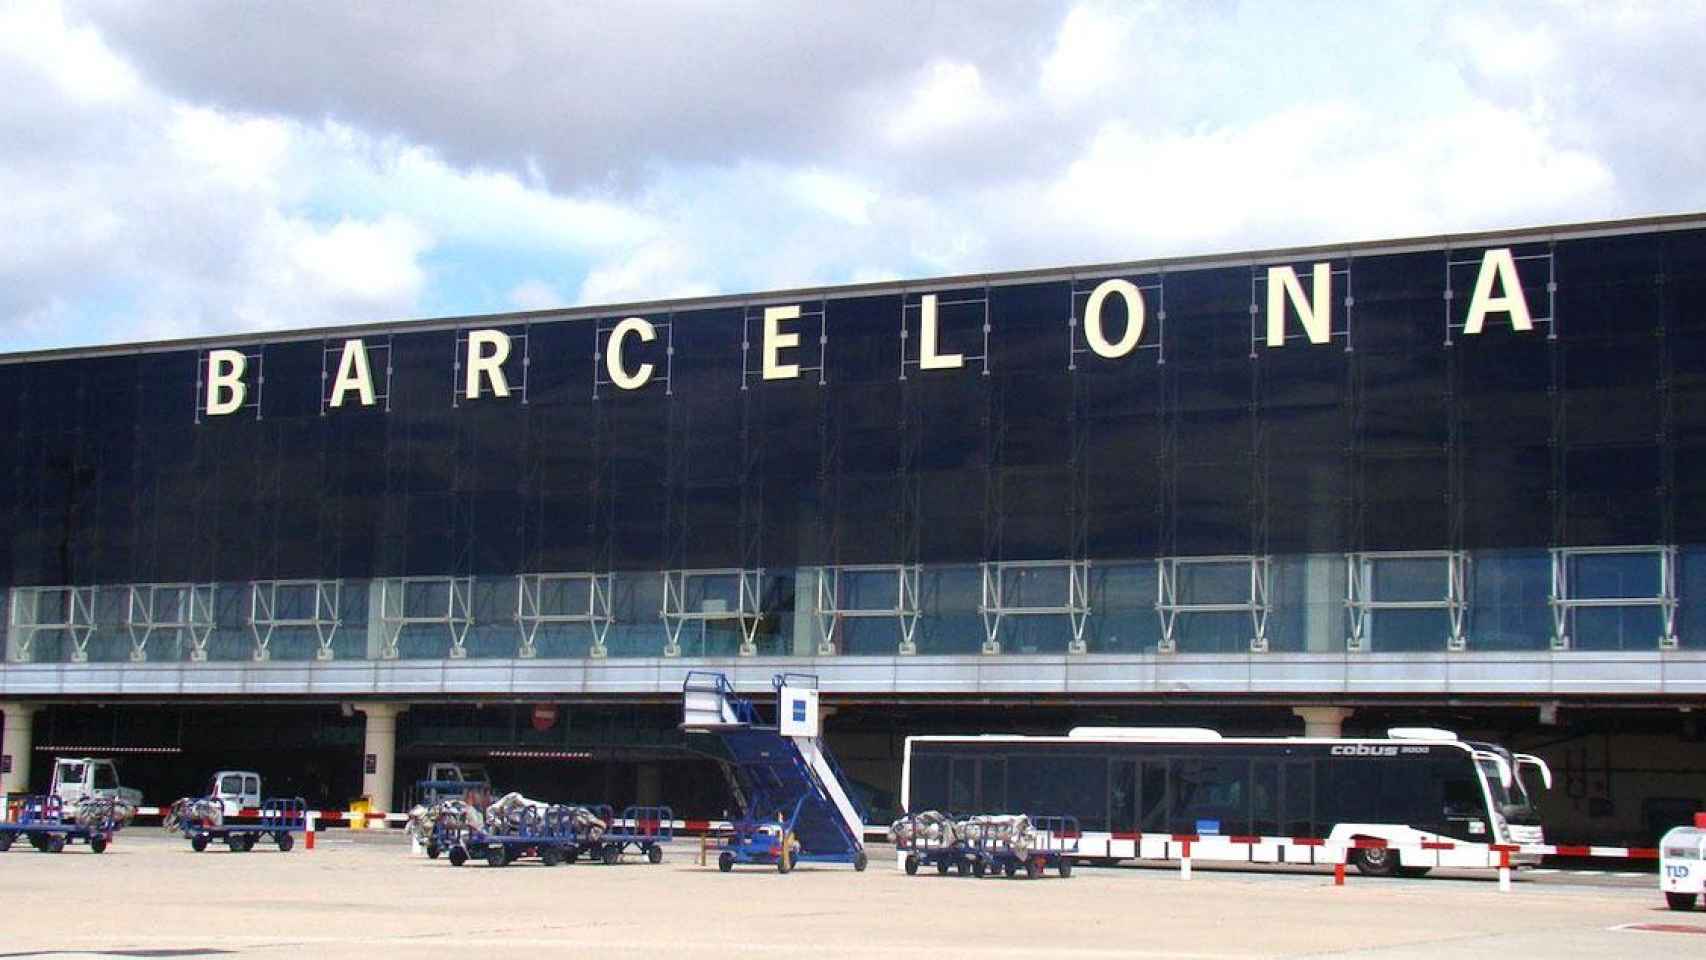 La terminal T2 del aeropuerto Josep Tarradellas-Barcelona El Prat, uno de los principales activos de Aena / AENA